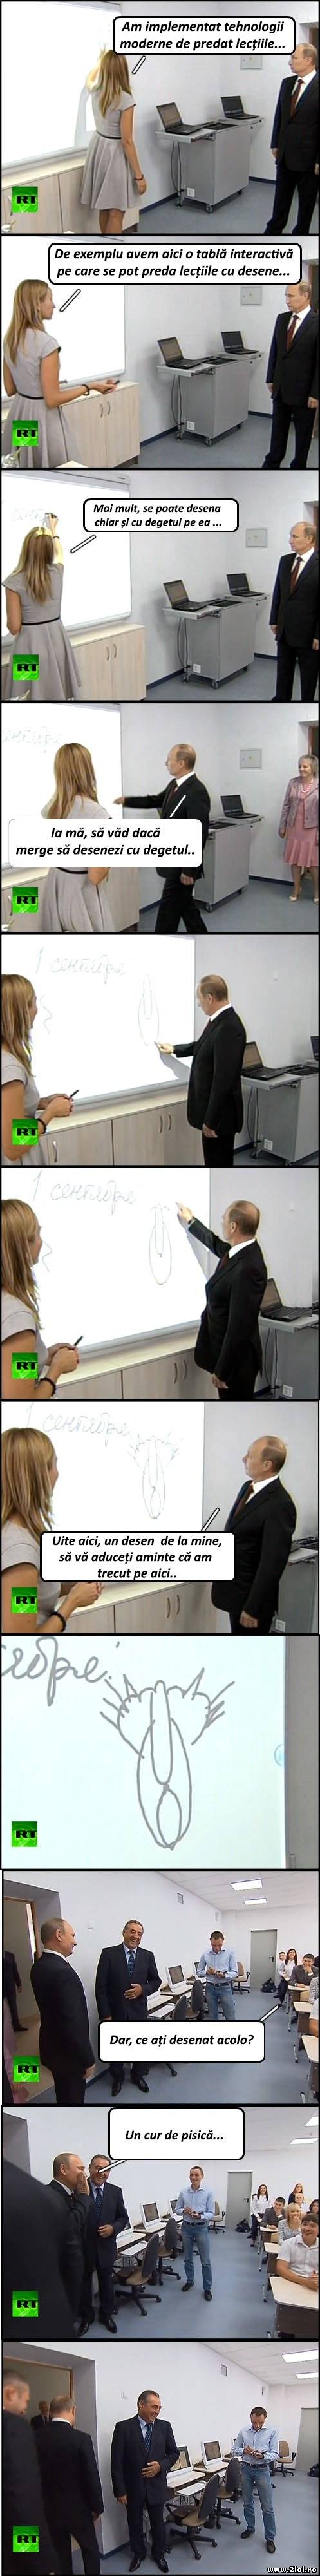 Putin în vizită la o școală cu tehnologii moderne | poze haioase